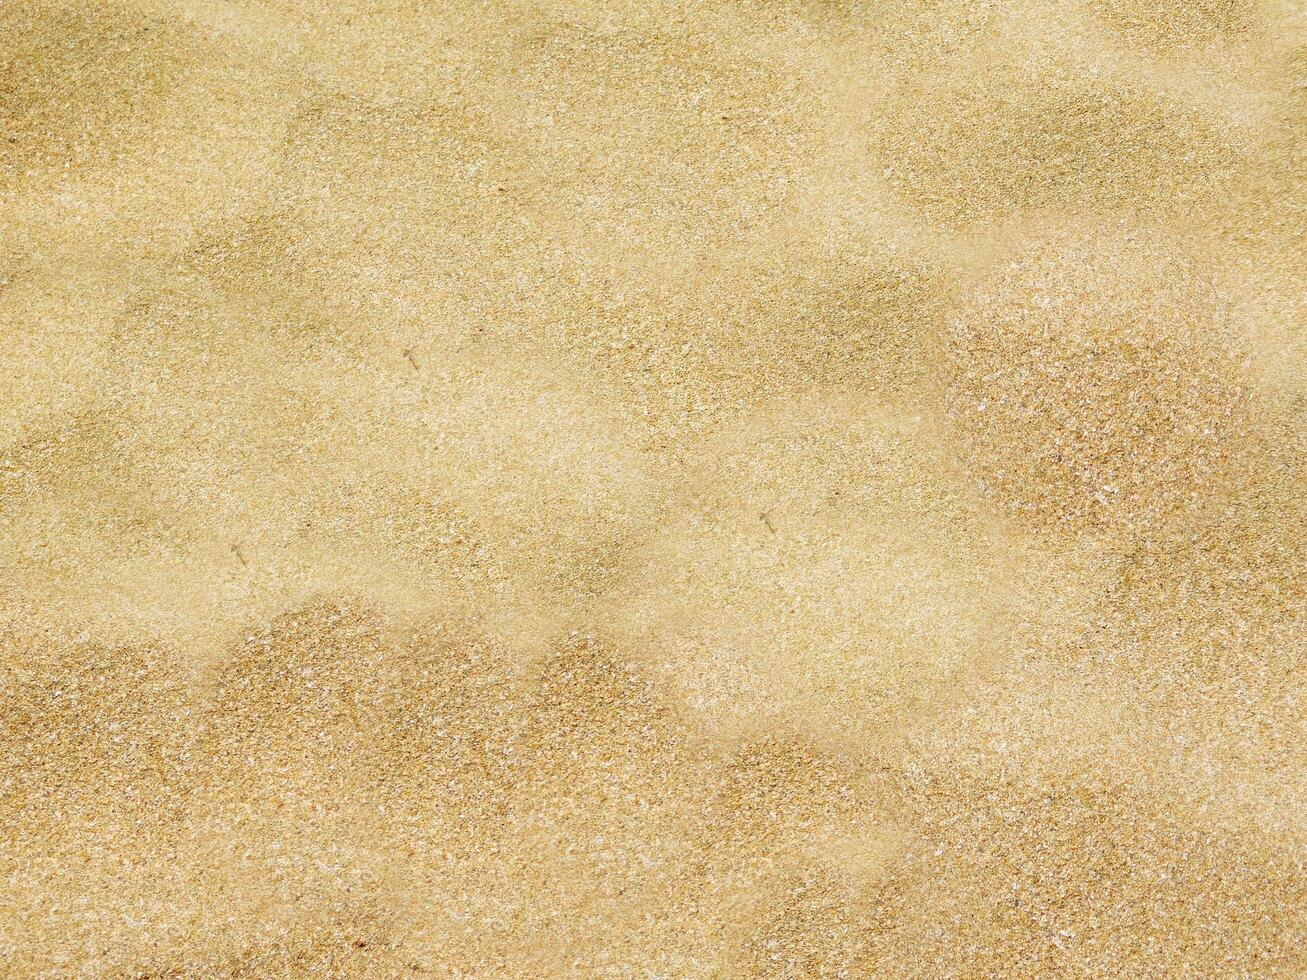 arena textura al aire libre foto